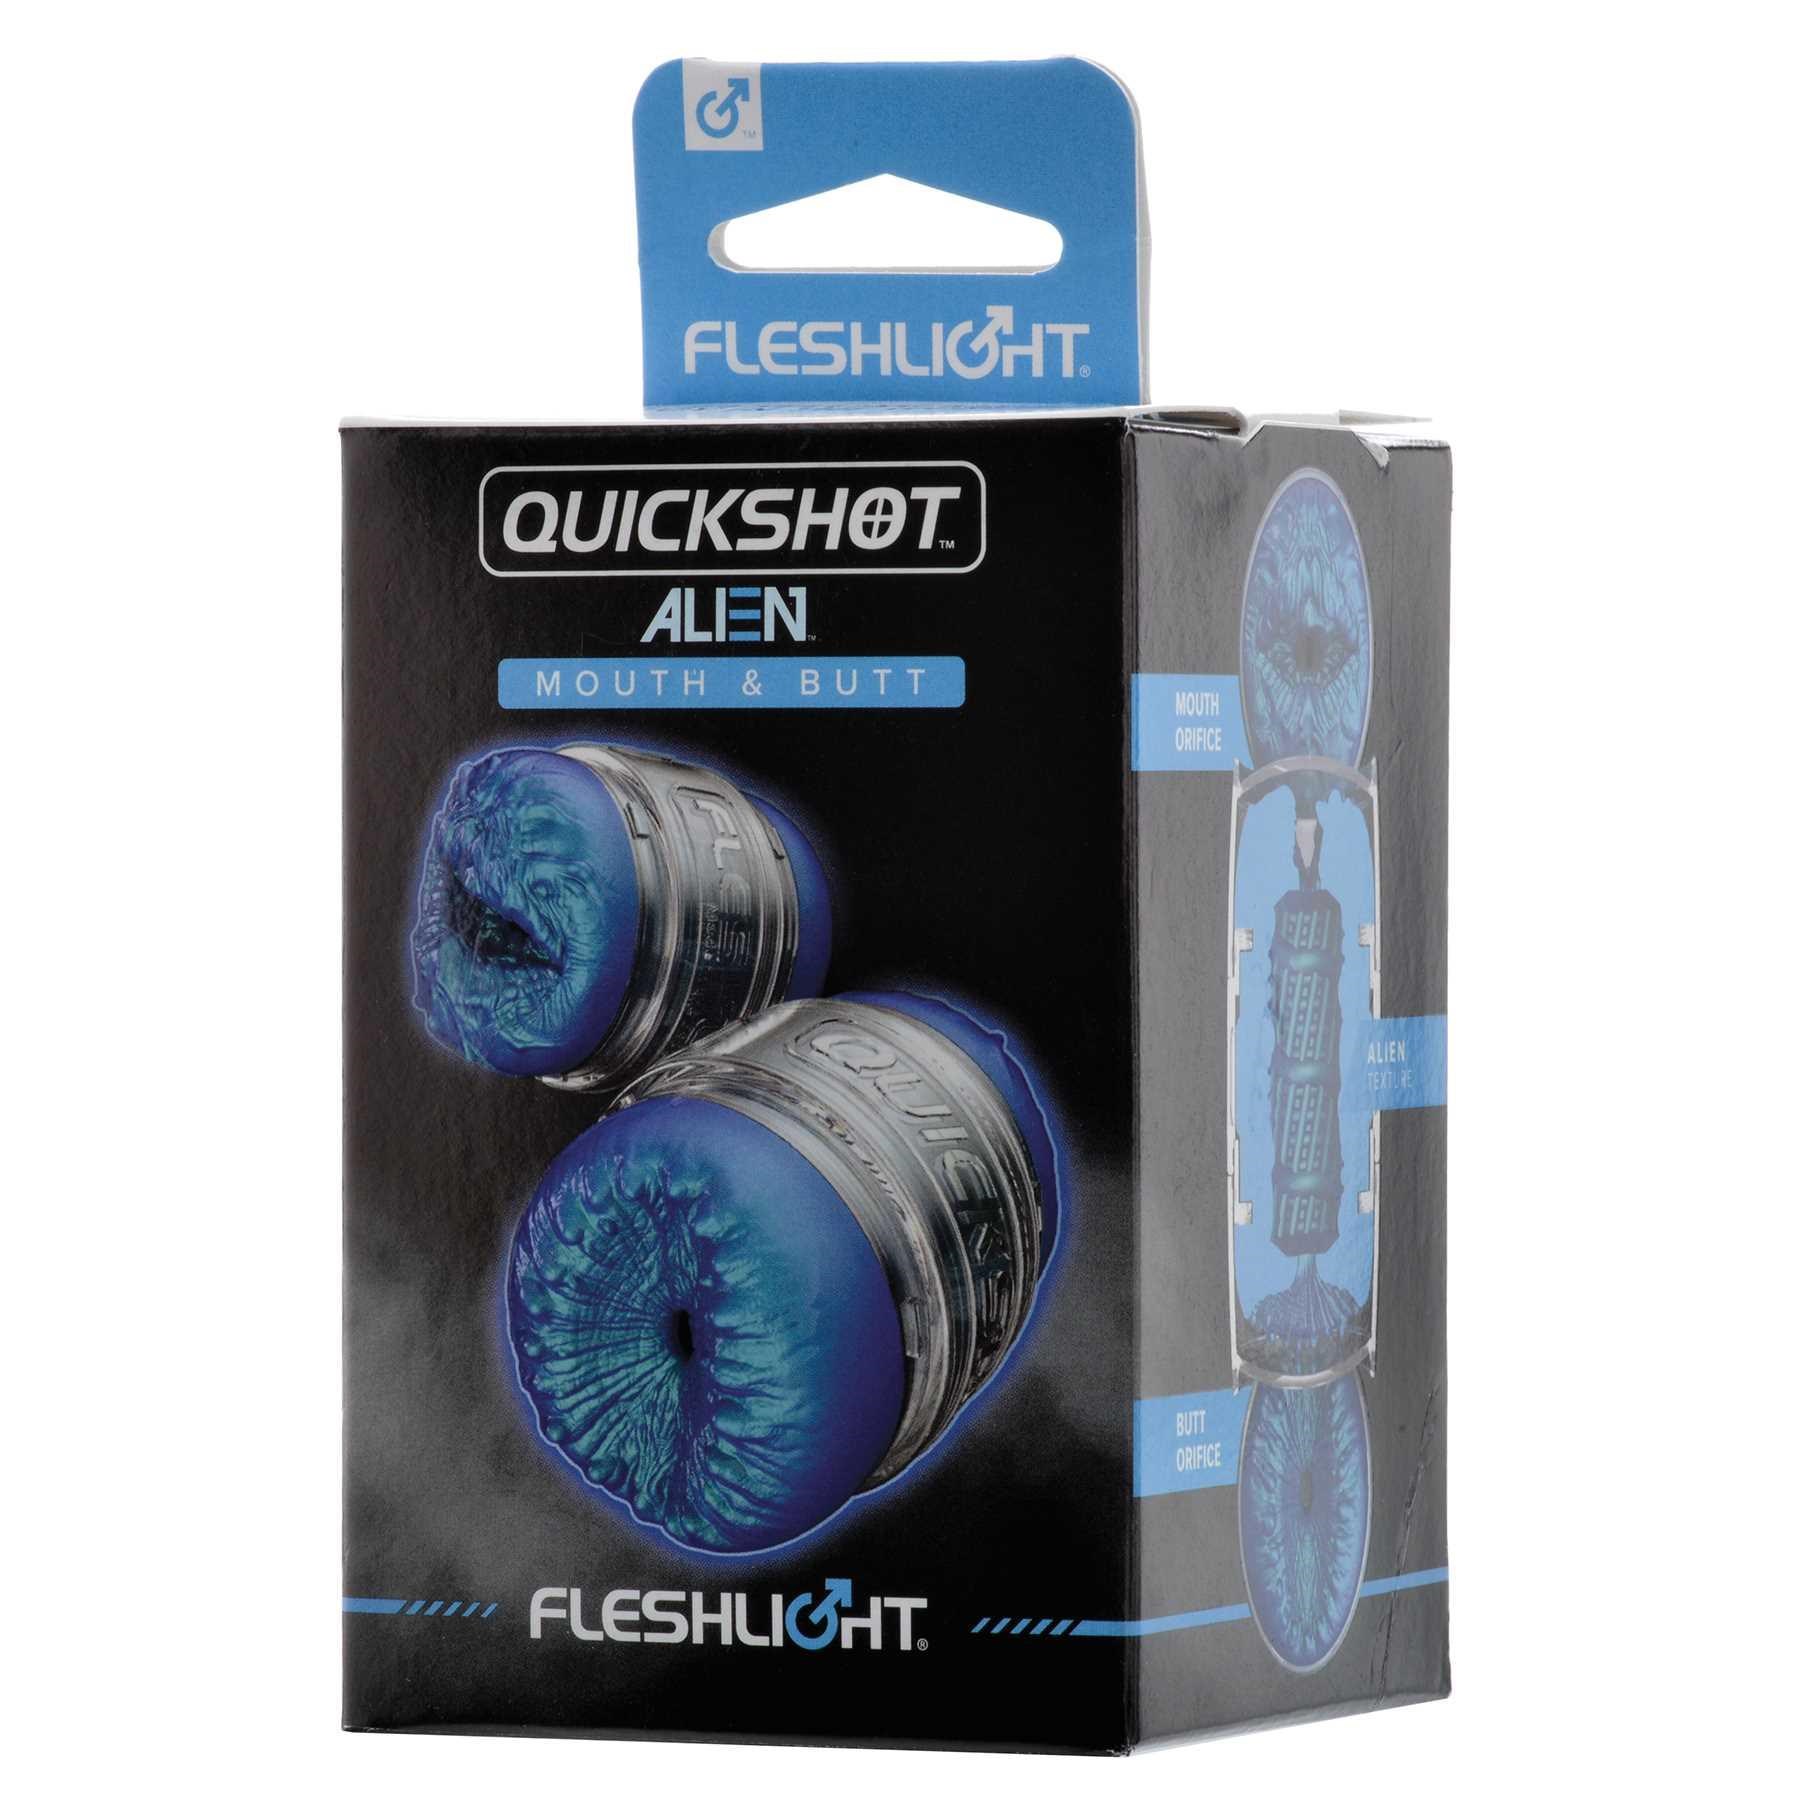 Fleshlight Quickshot Alien Mouth & ButtFleshlight Quickshot Alien Mouth & Butt male masturbator pack